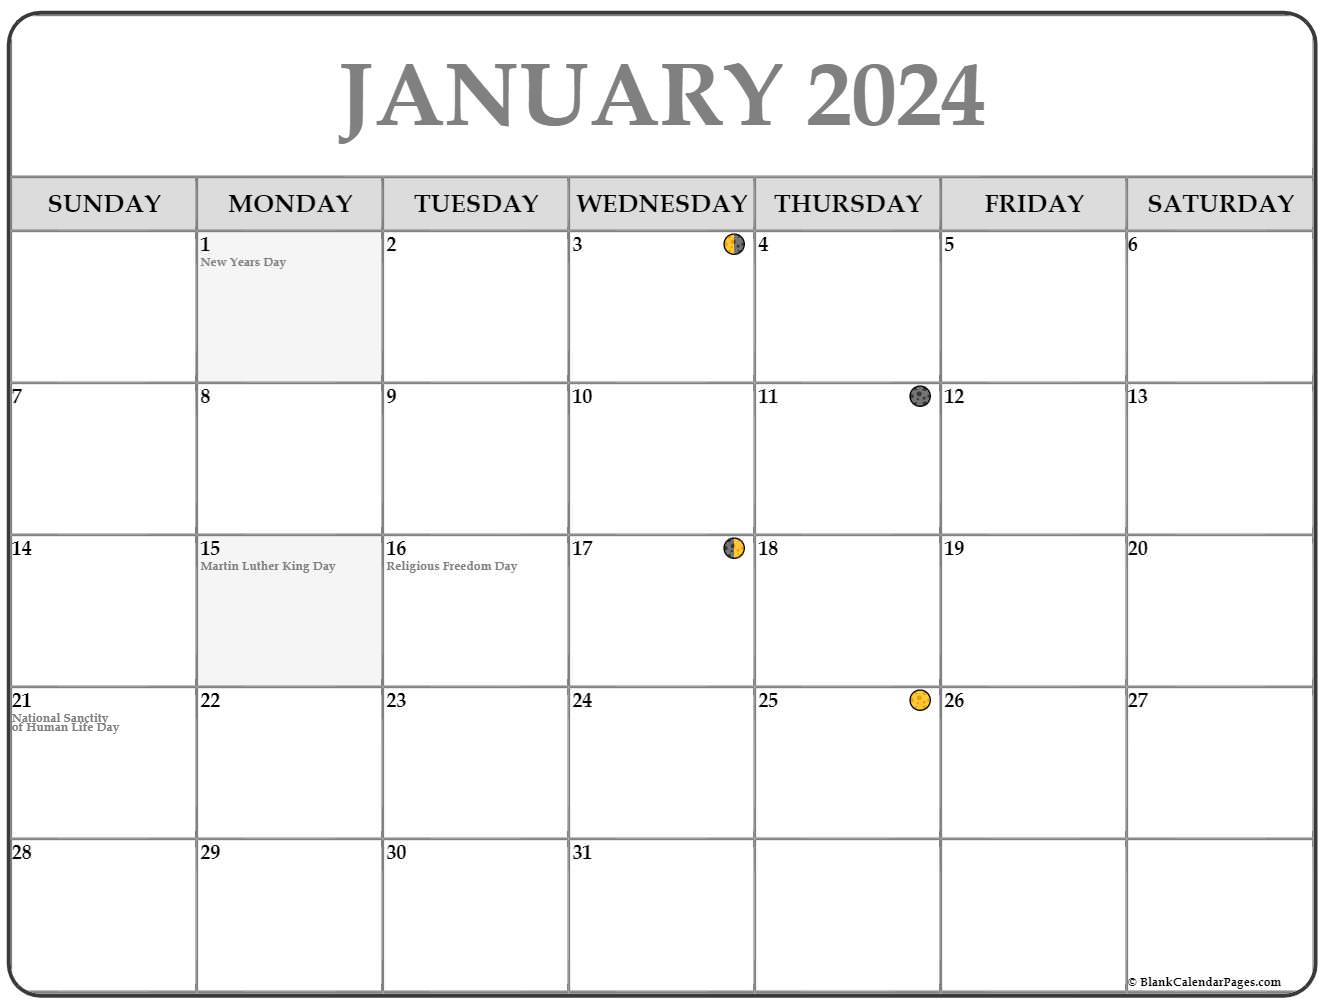 january-2023-lunar-calendar-moon-phase-calendar